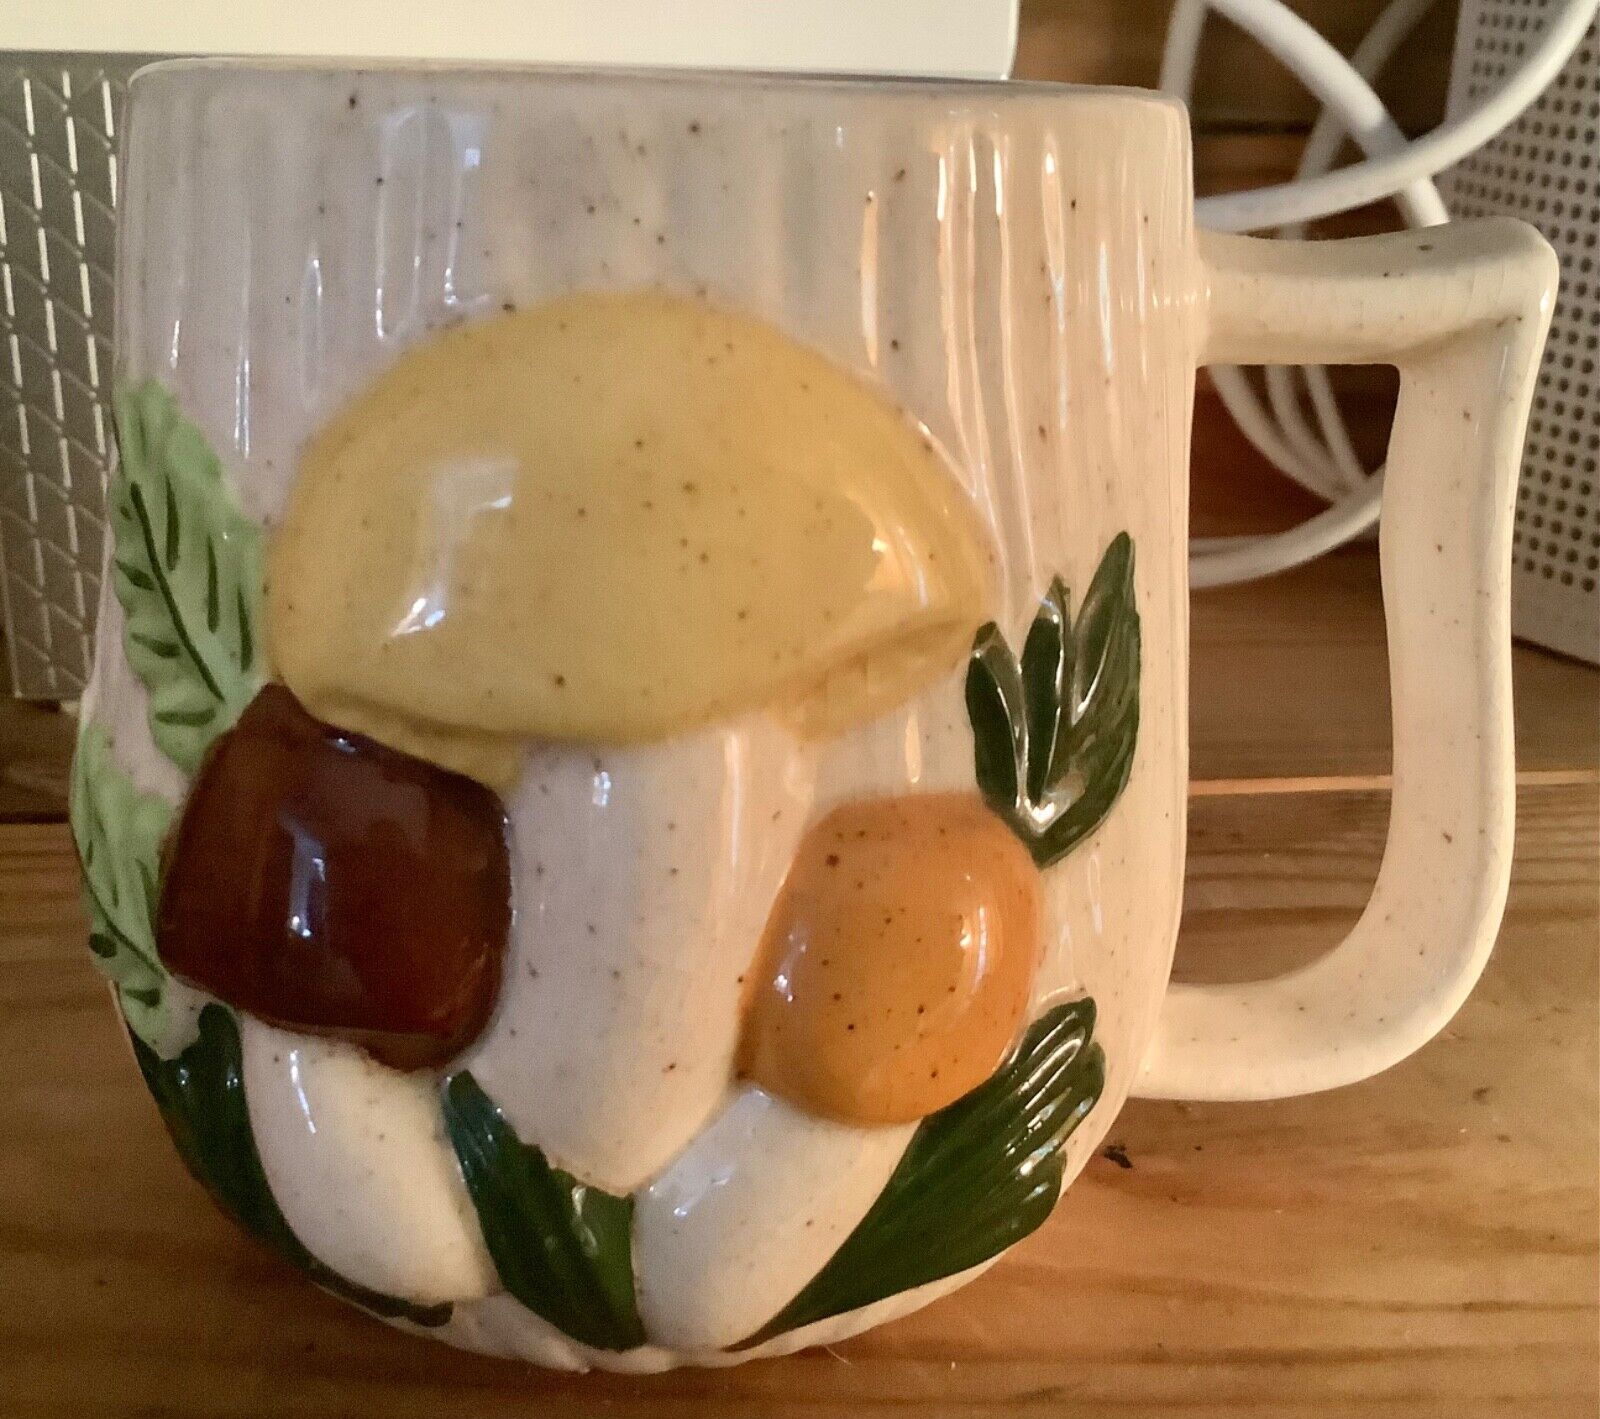 Arnel's Mushroom Pottery Tea Set, Mushroom Teapot Cream Sugar Set